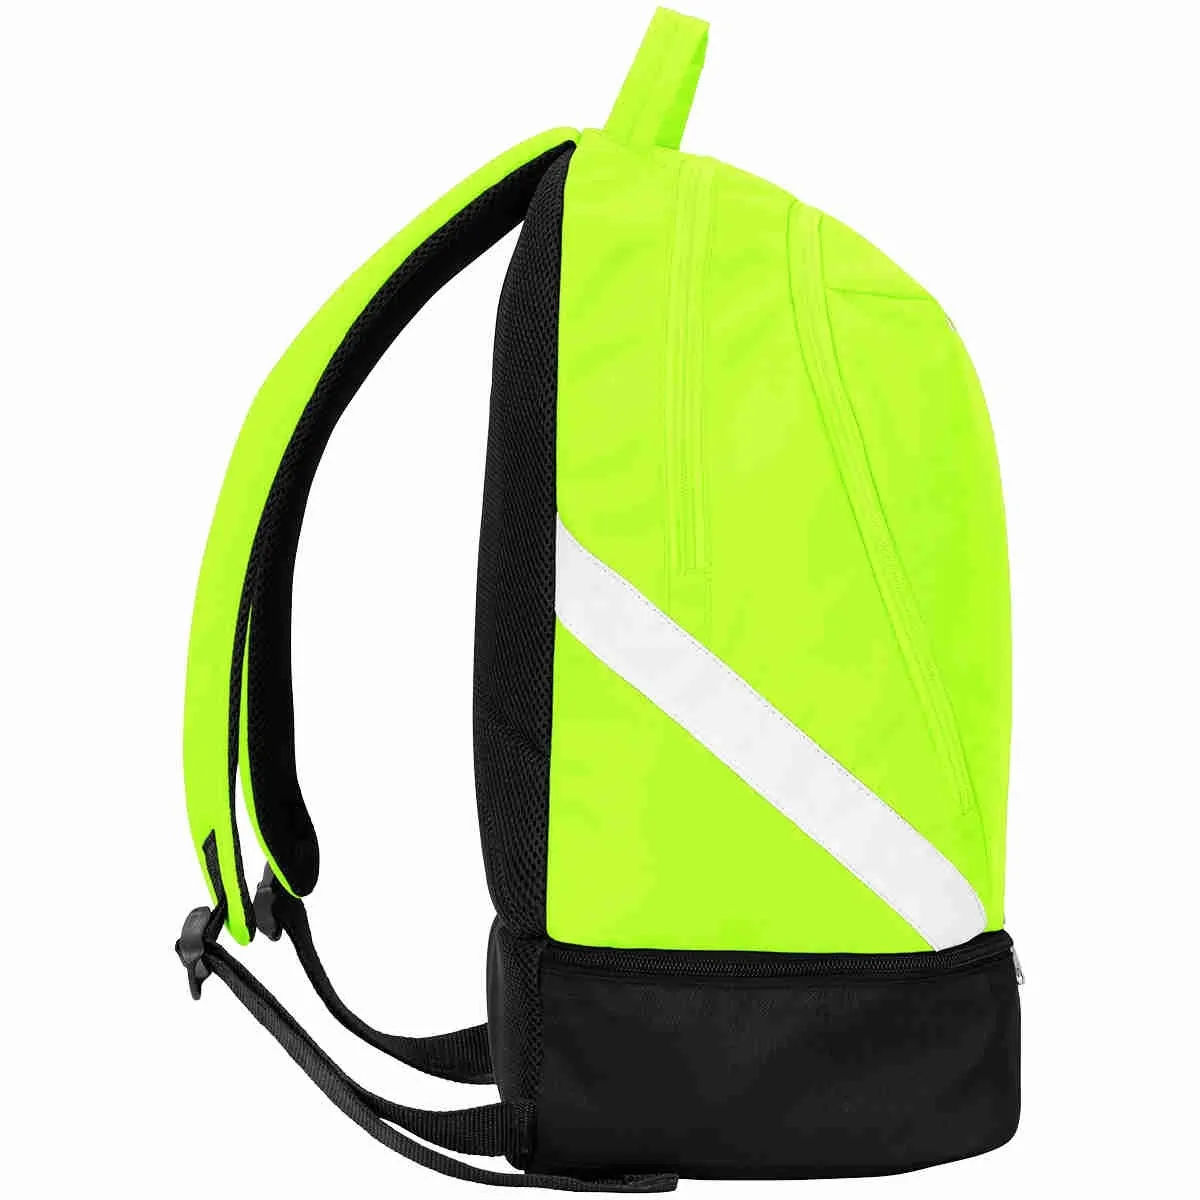 Jako backpack Iconic neon green/black